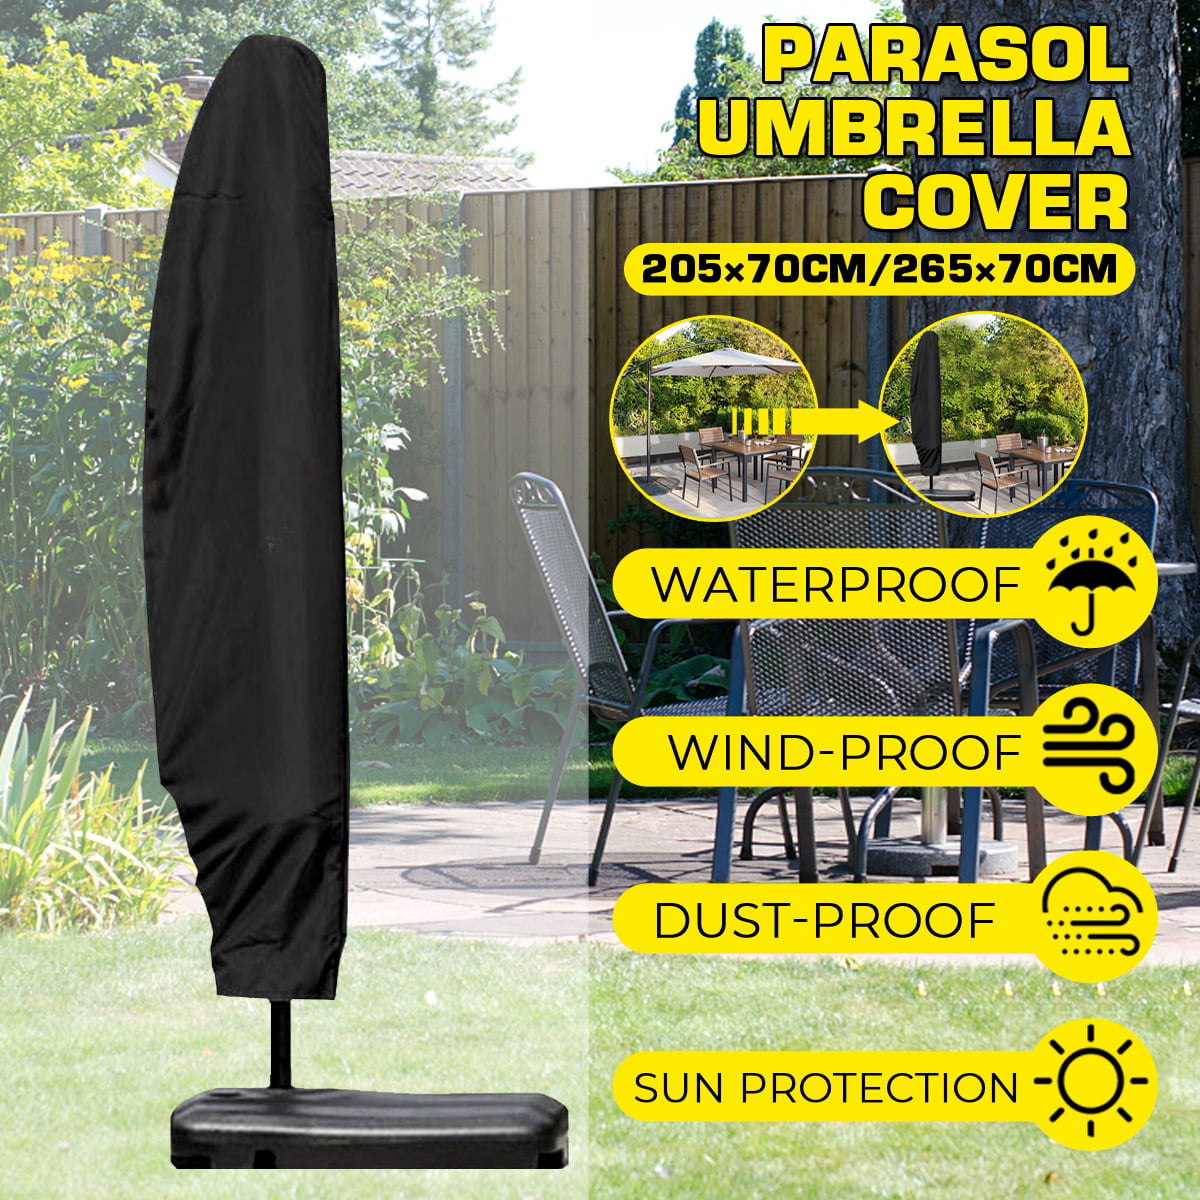 Large Parasol Banana Cantilever Umbrella Cover Patio Garden Outdoor Waterproof 